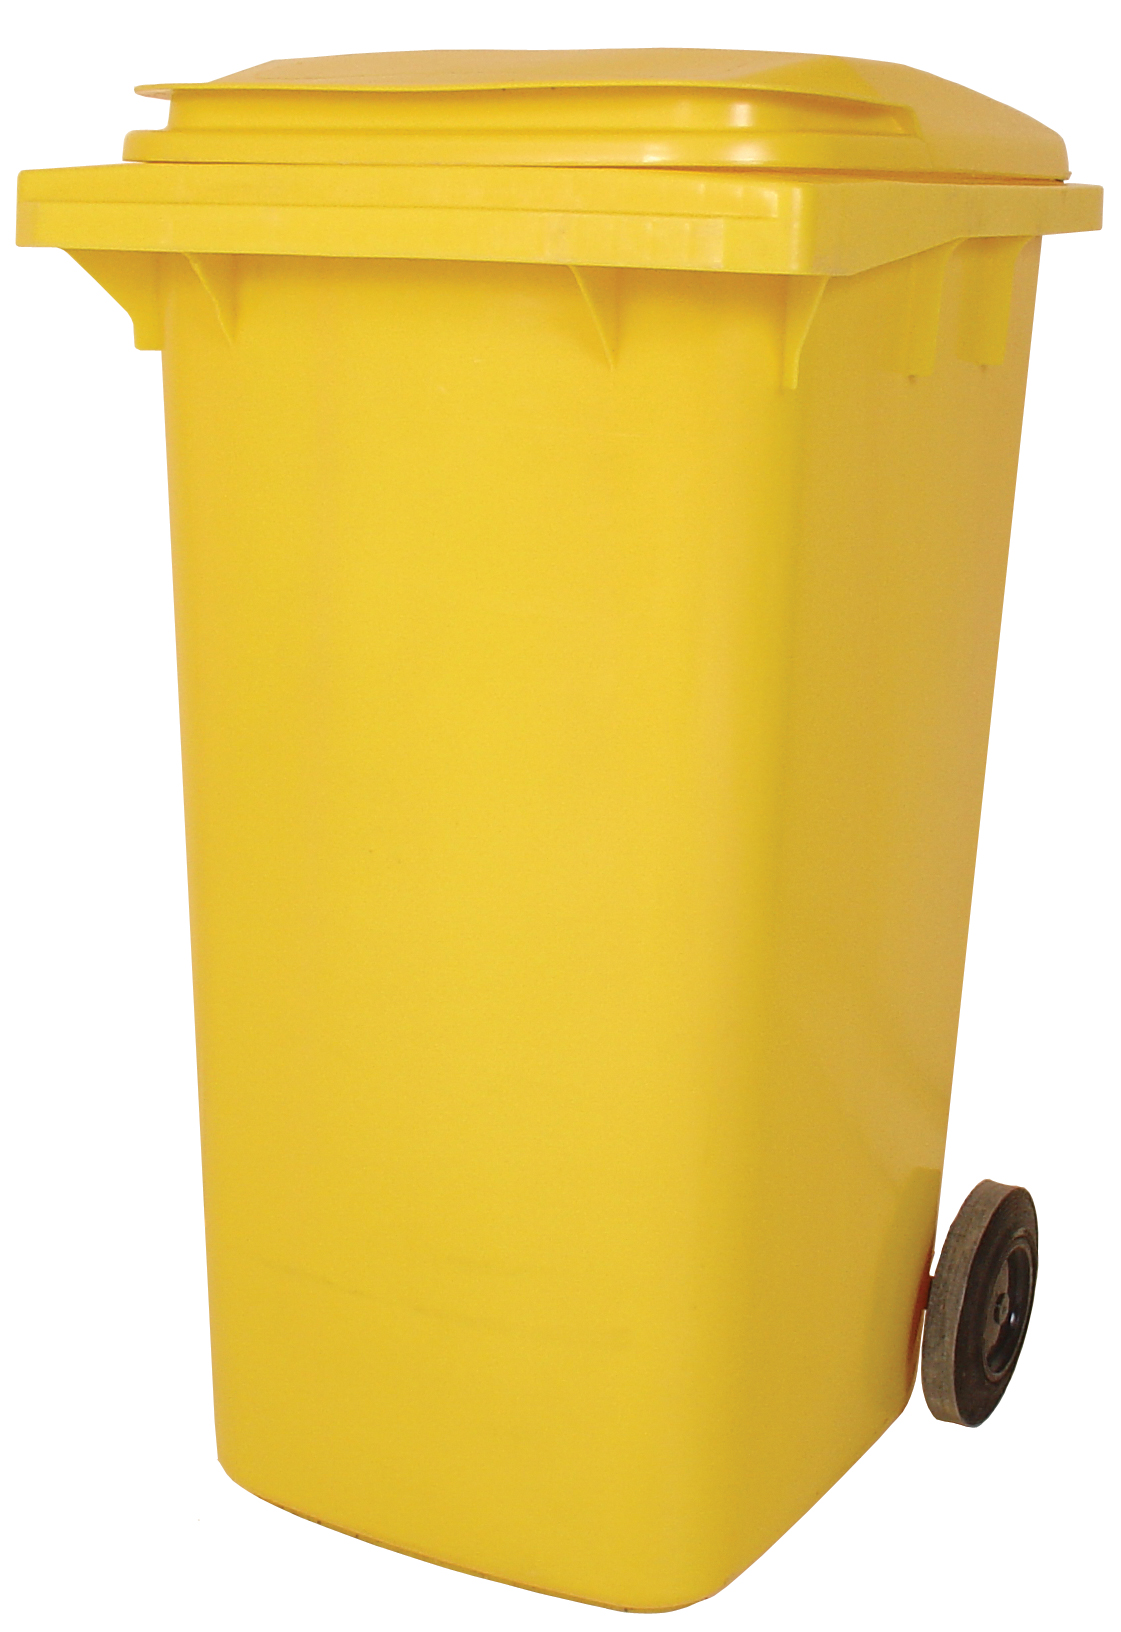 Empty 240 litre Wheelie Bin: Yellow